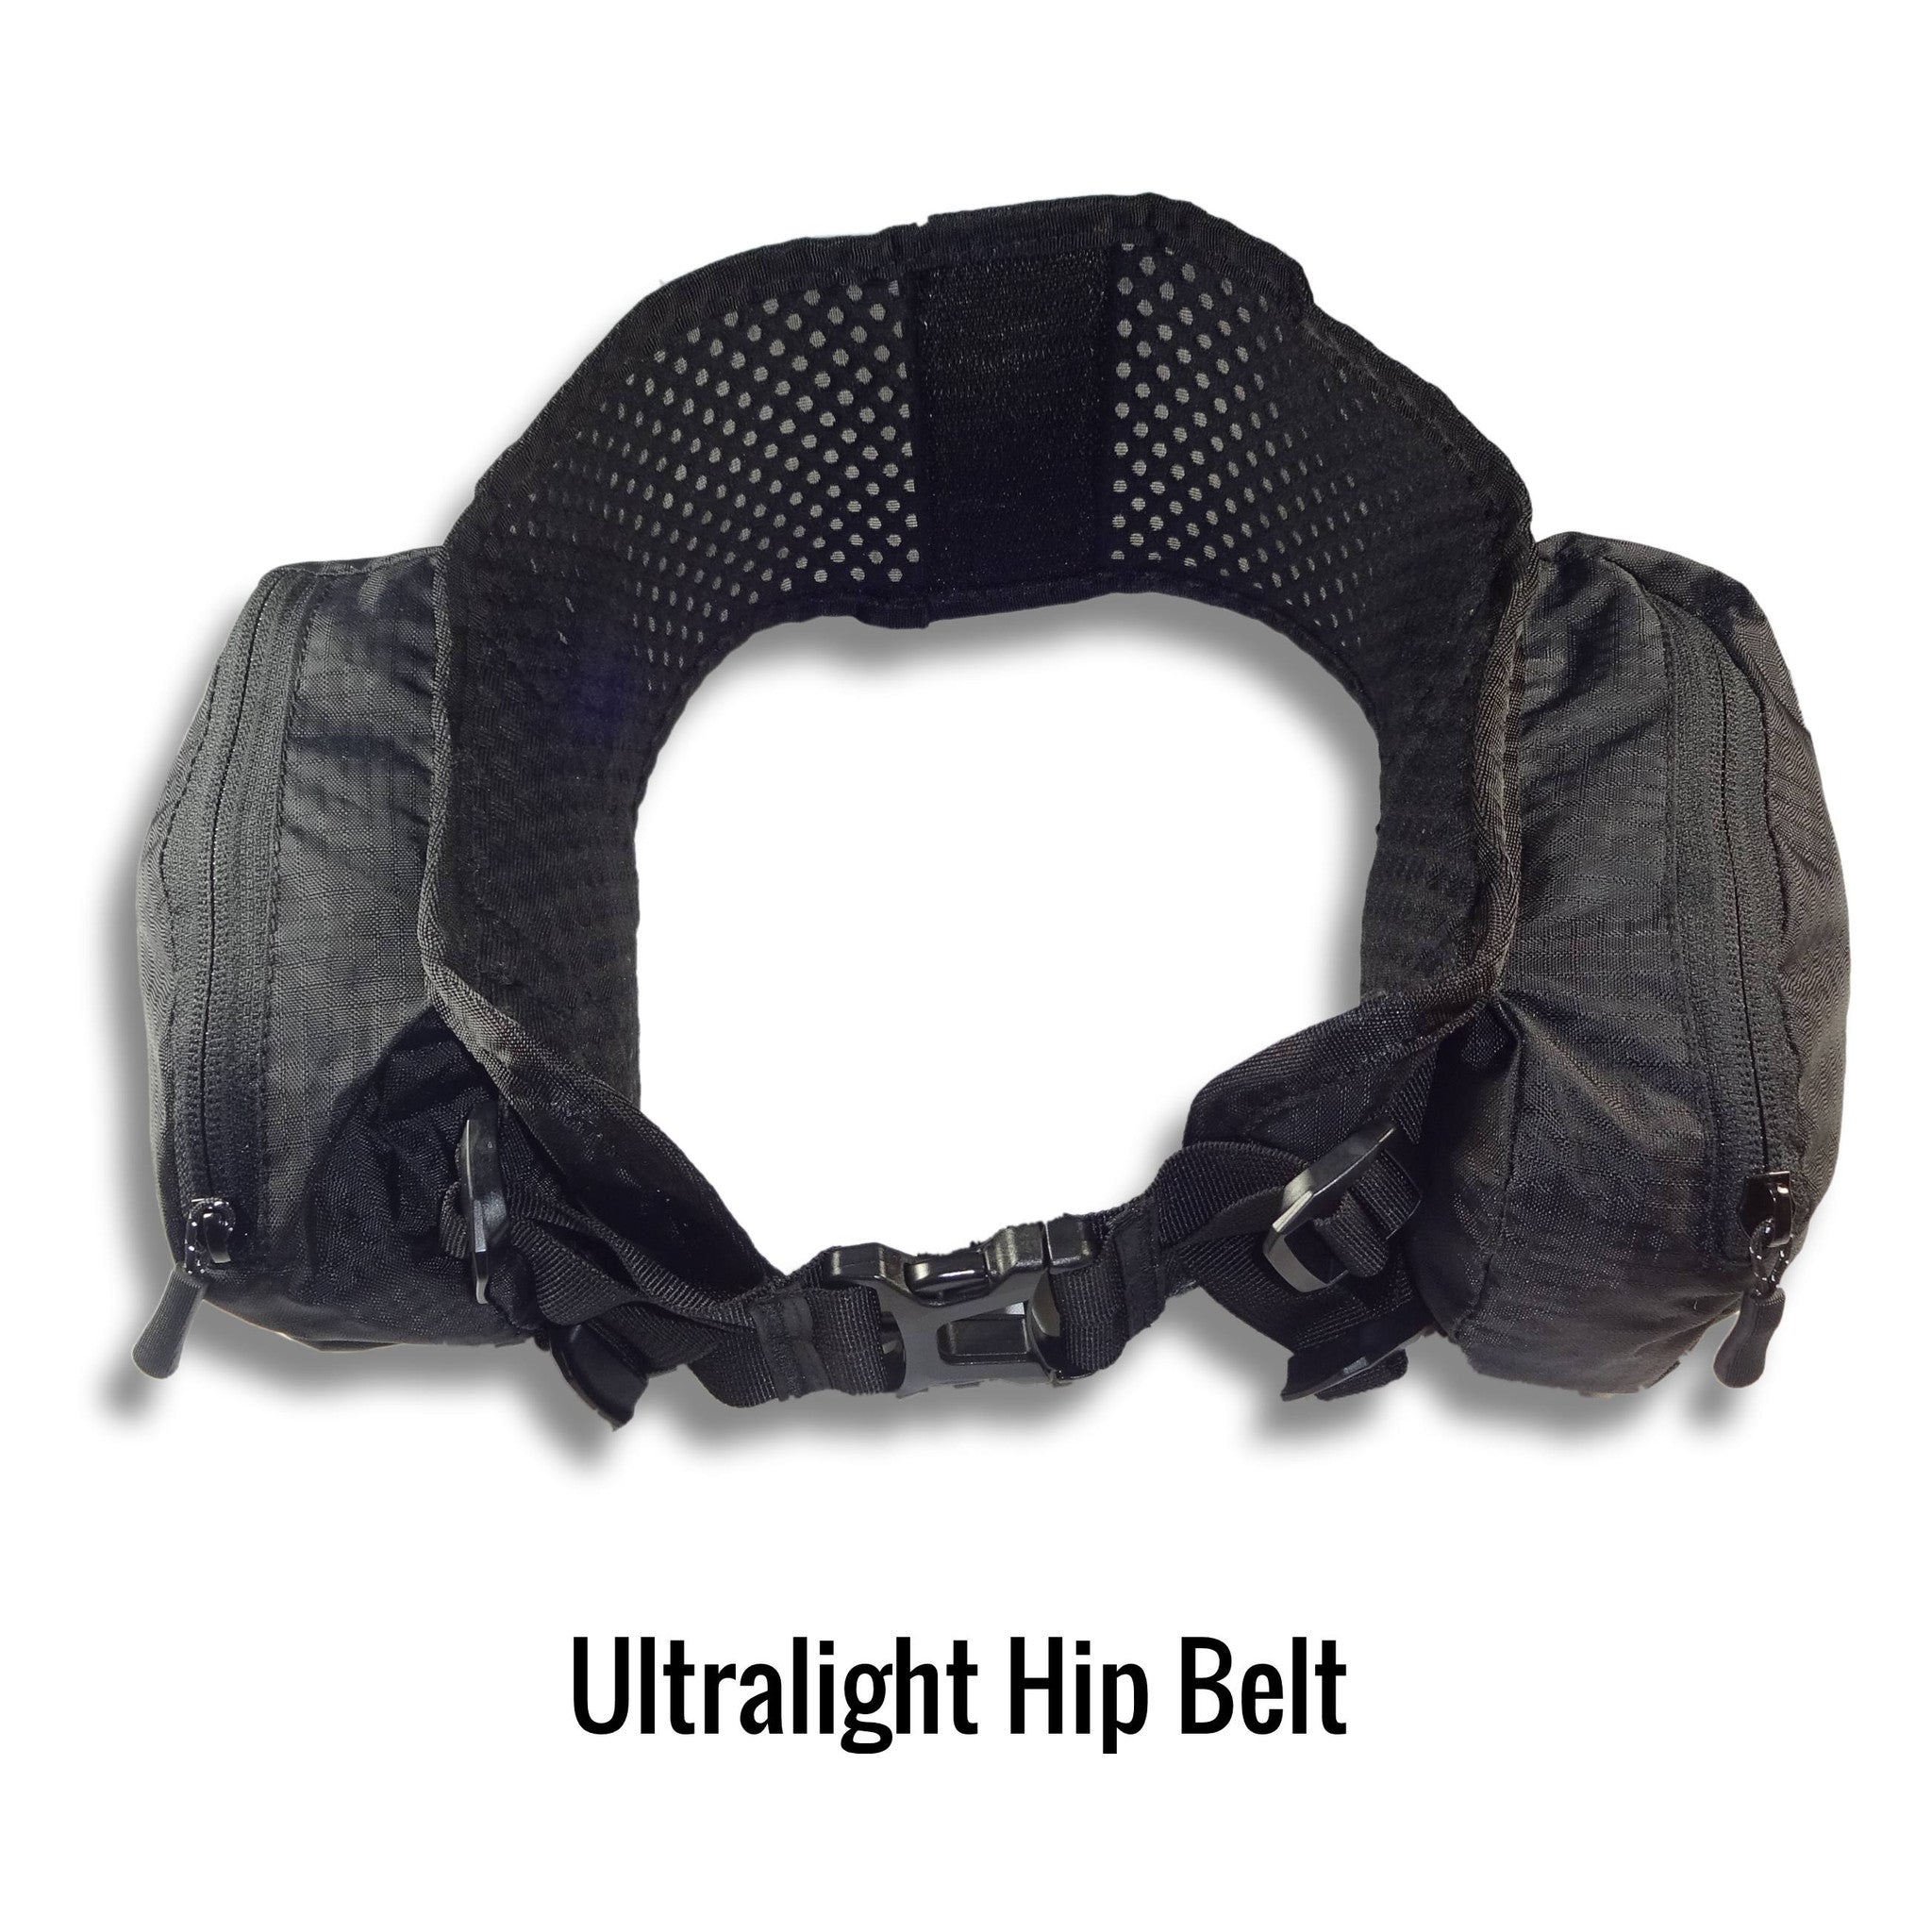 Ultralight Hipbelt with pockets